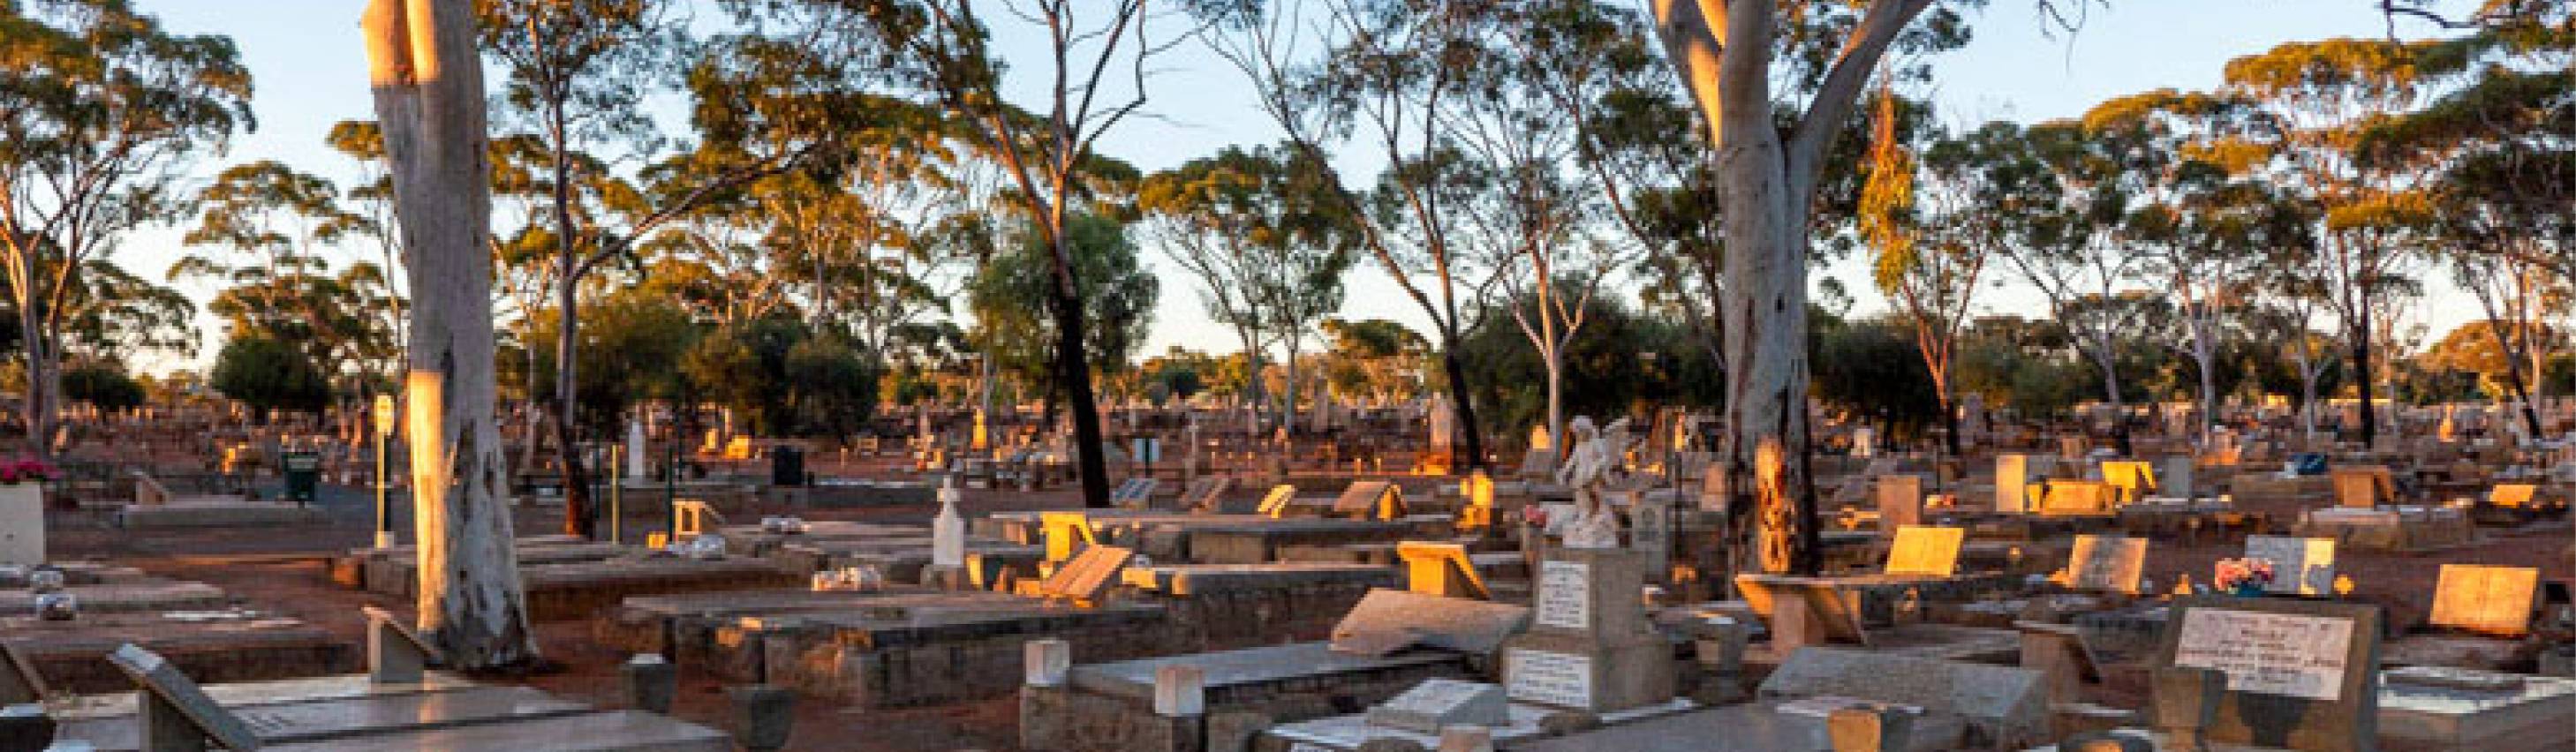 Kalgoorlie Cemetery Board | Contact Us